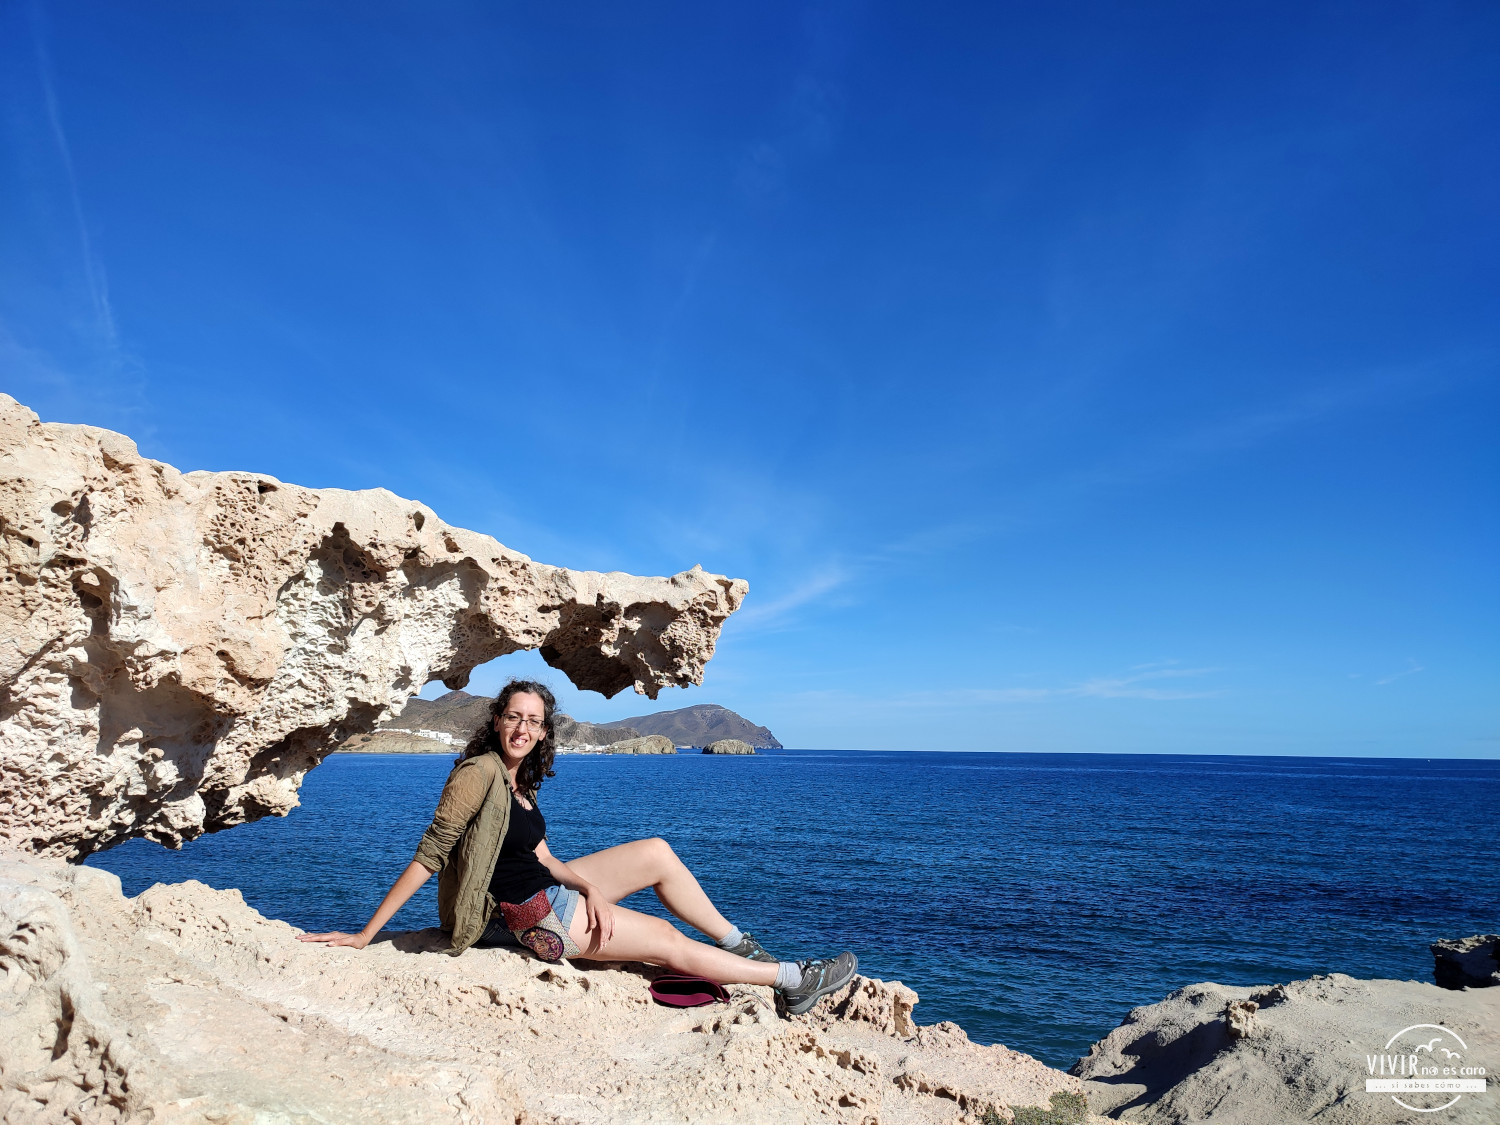 Duna fósil de la Playa de los Escullos (Cabo de Gata, Almería)